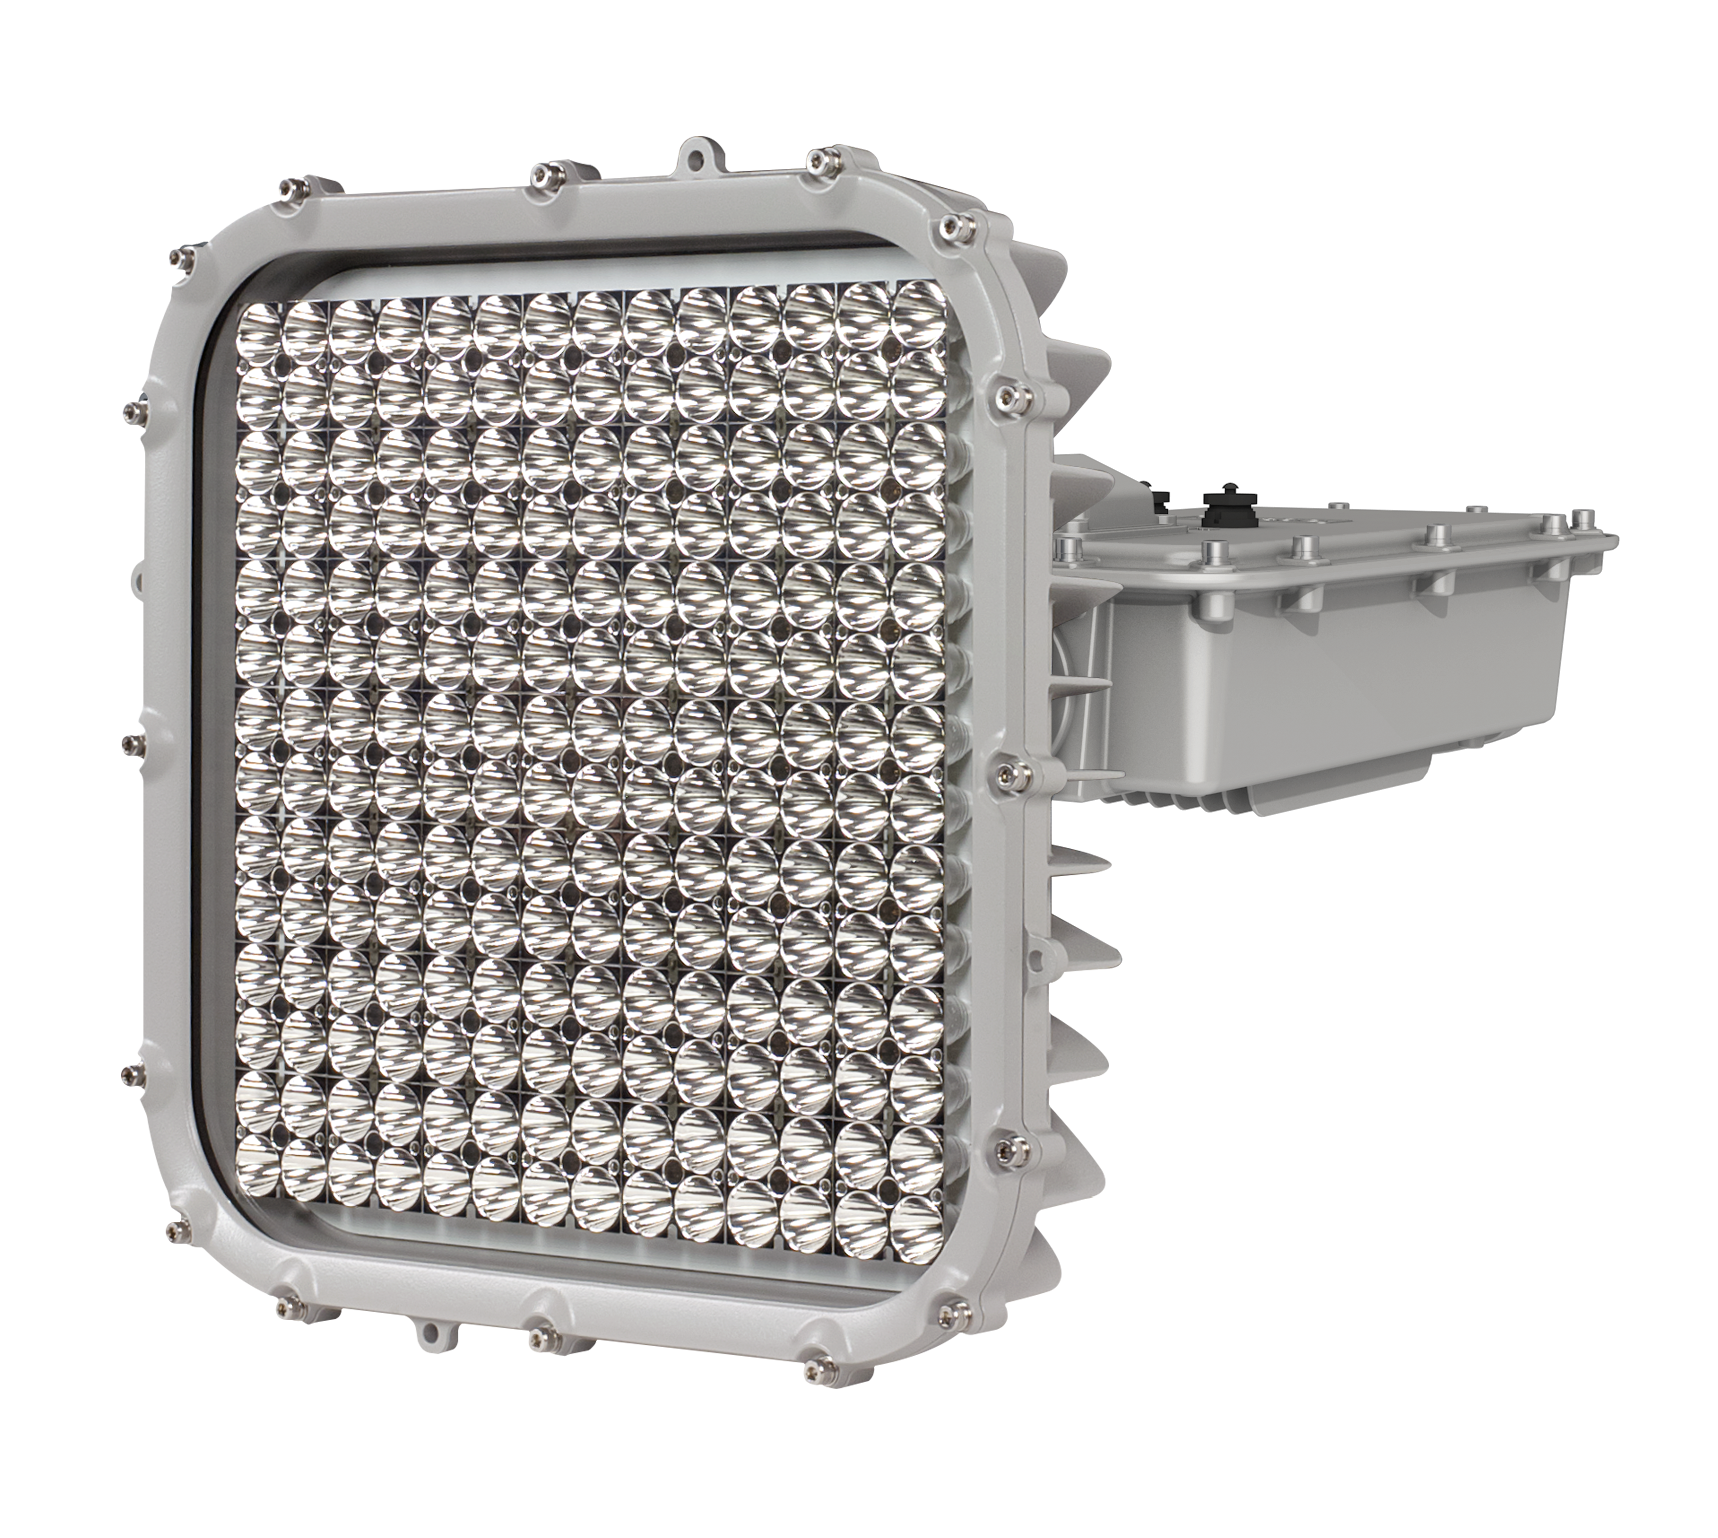 Прожектор светодиодный 200 Вт ip66. Прожектор лед 200вт п2. Светодиодные промышленные прожекторы «Amira GIGATERA» Sufa-a. Светодиодный прожектор 200 ватт. Прожектора светодиодные 200 вт цена